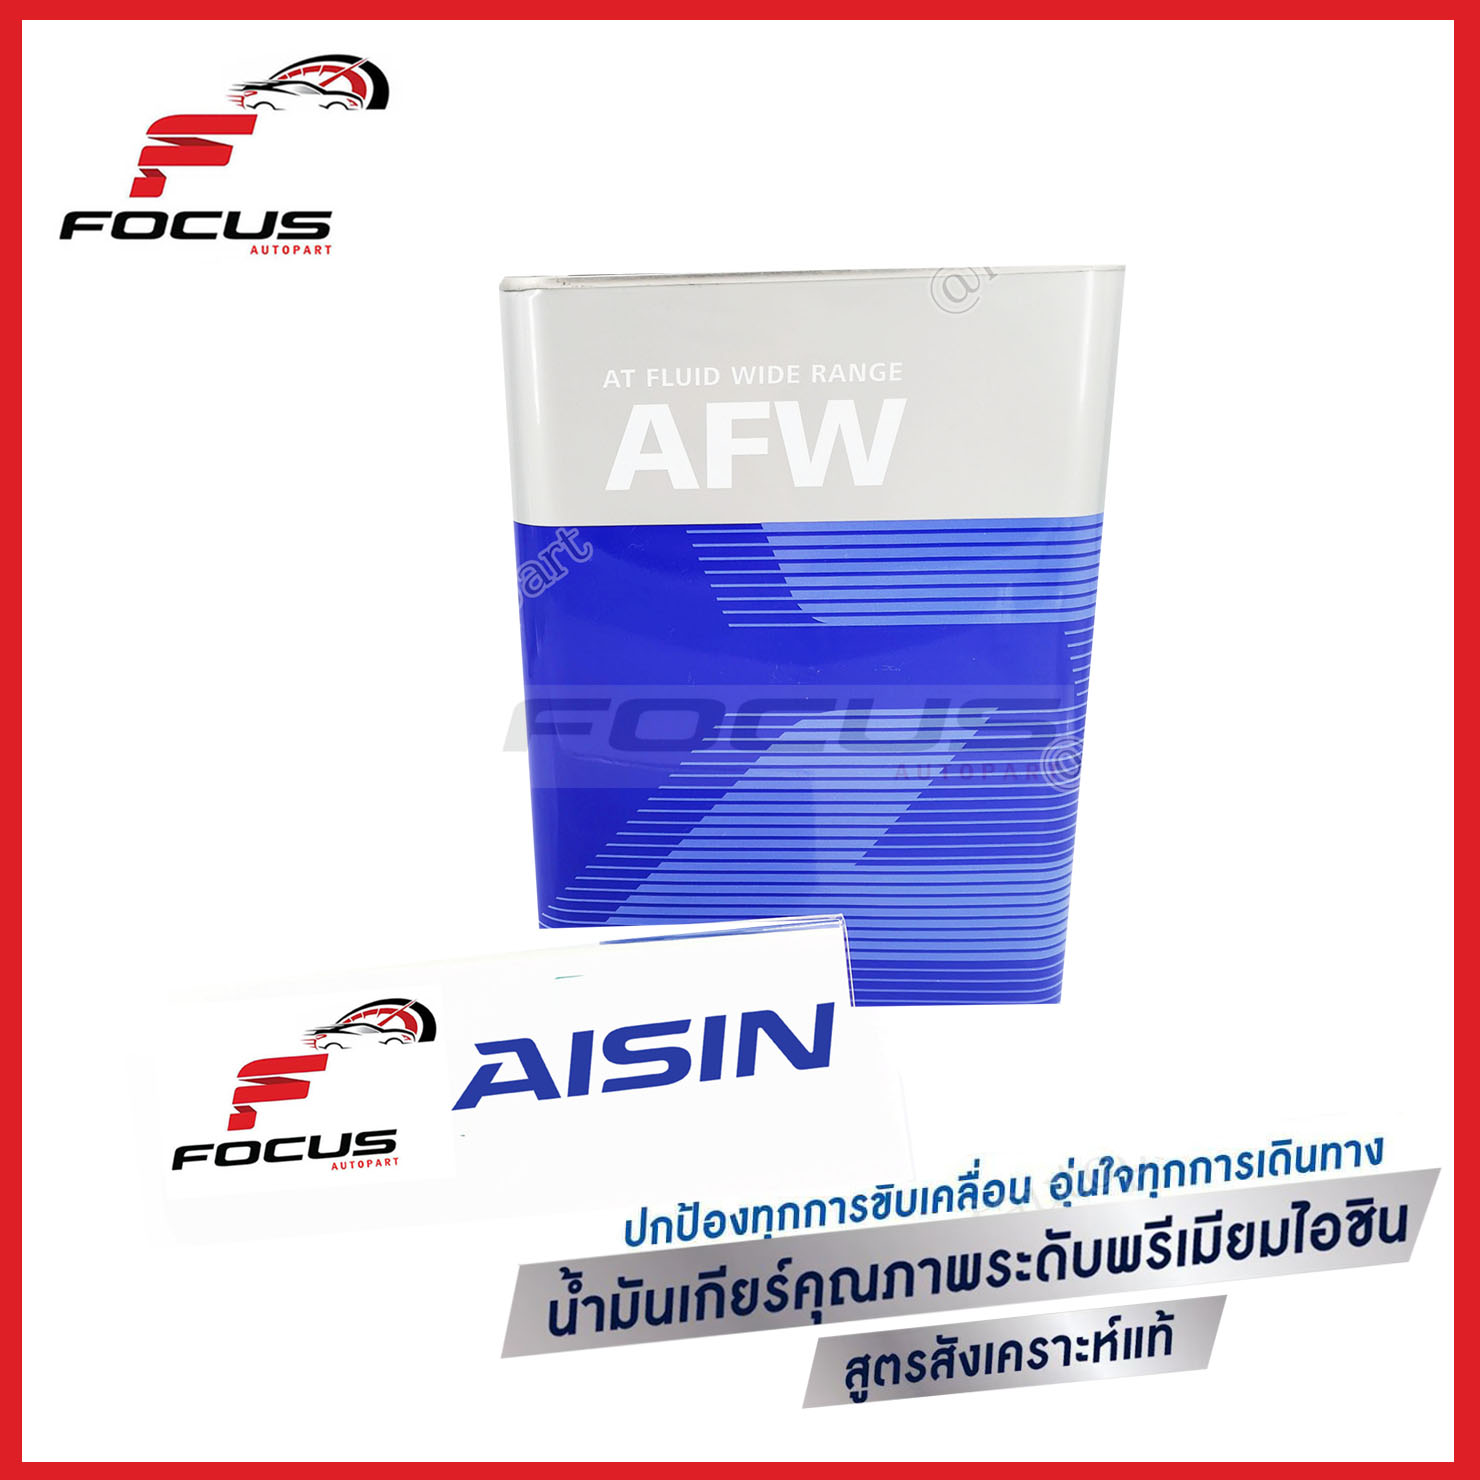 AISIN น้ำมันเกียร์อัตโนมัติ ไอซิน Aisin AFW ขนาด 4ลิตร น้ำมันเกียร์ Aisin